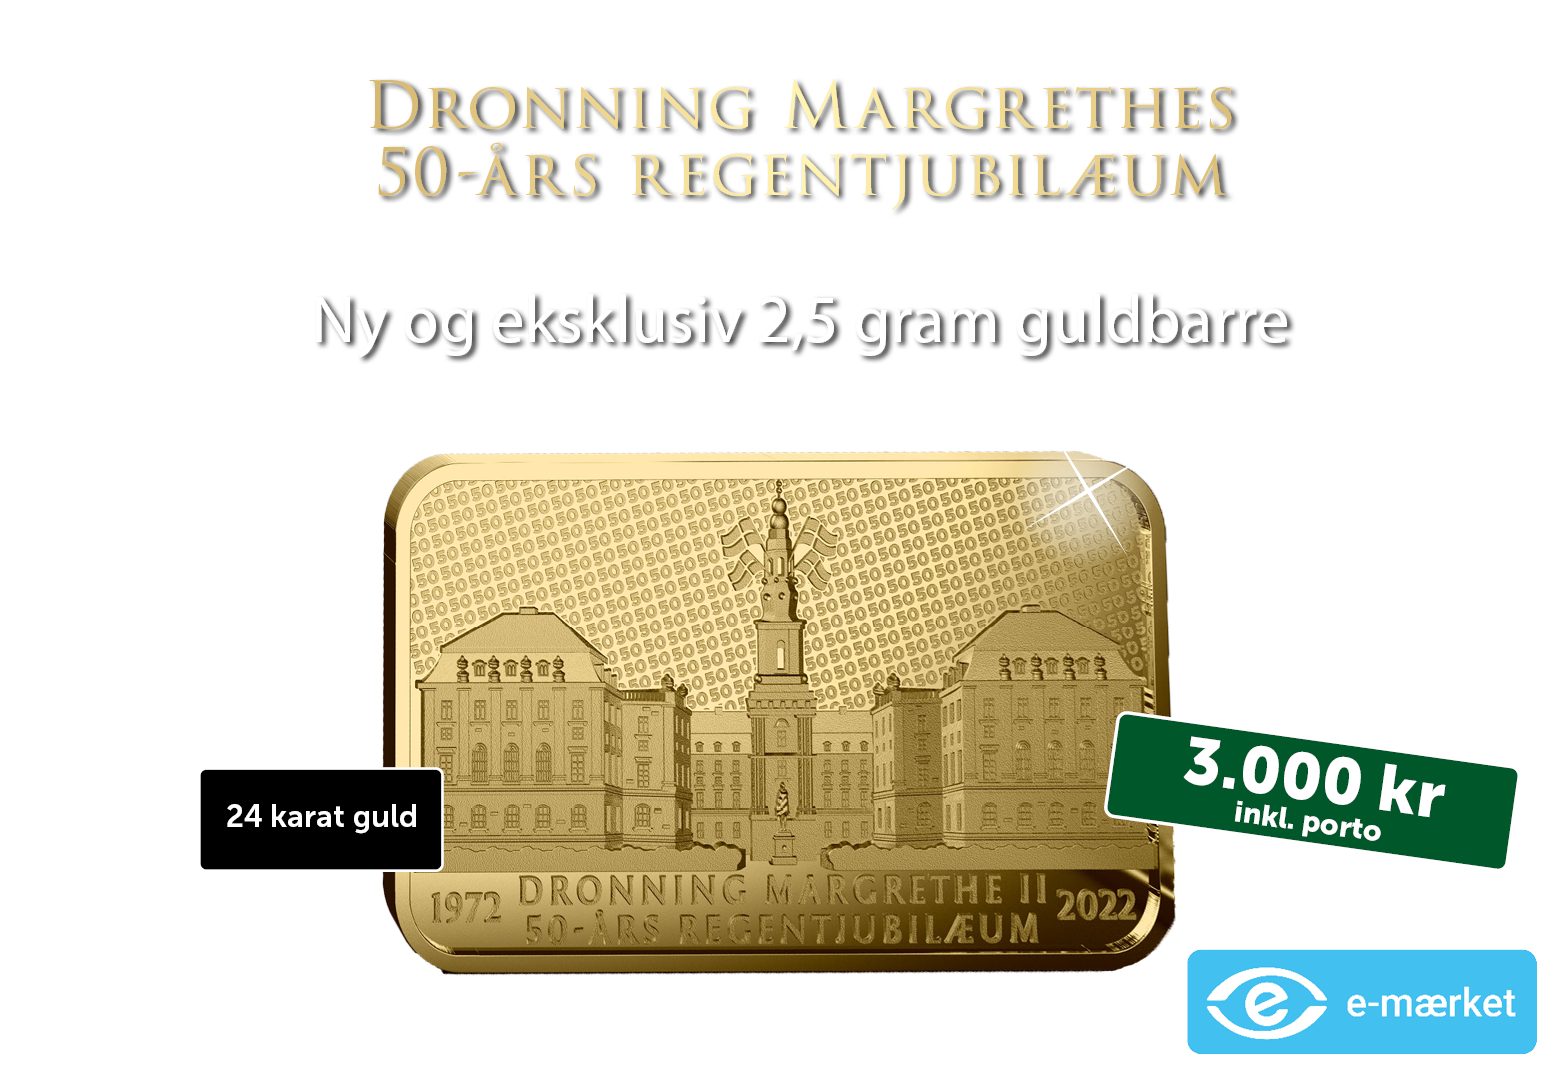 Dronning Margrethe 50-års regentjubilæum 2,5 gram guldbarre